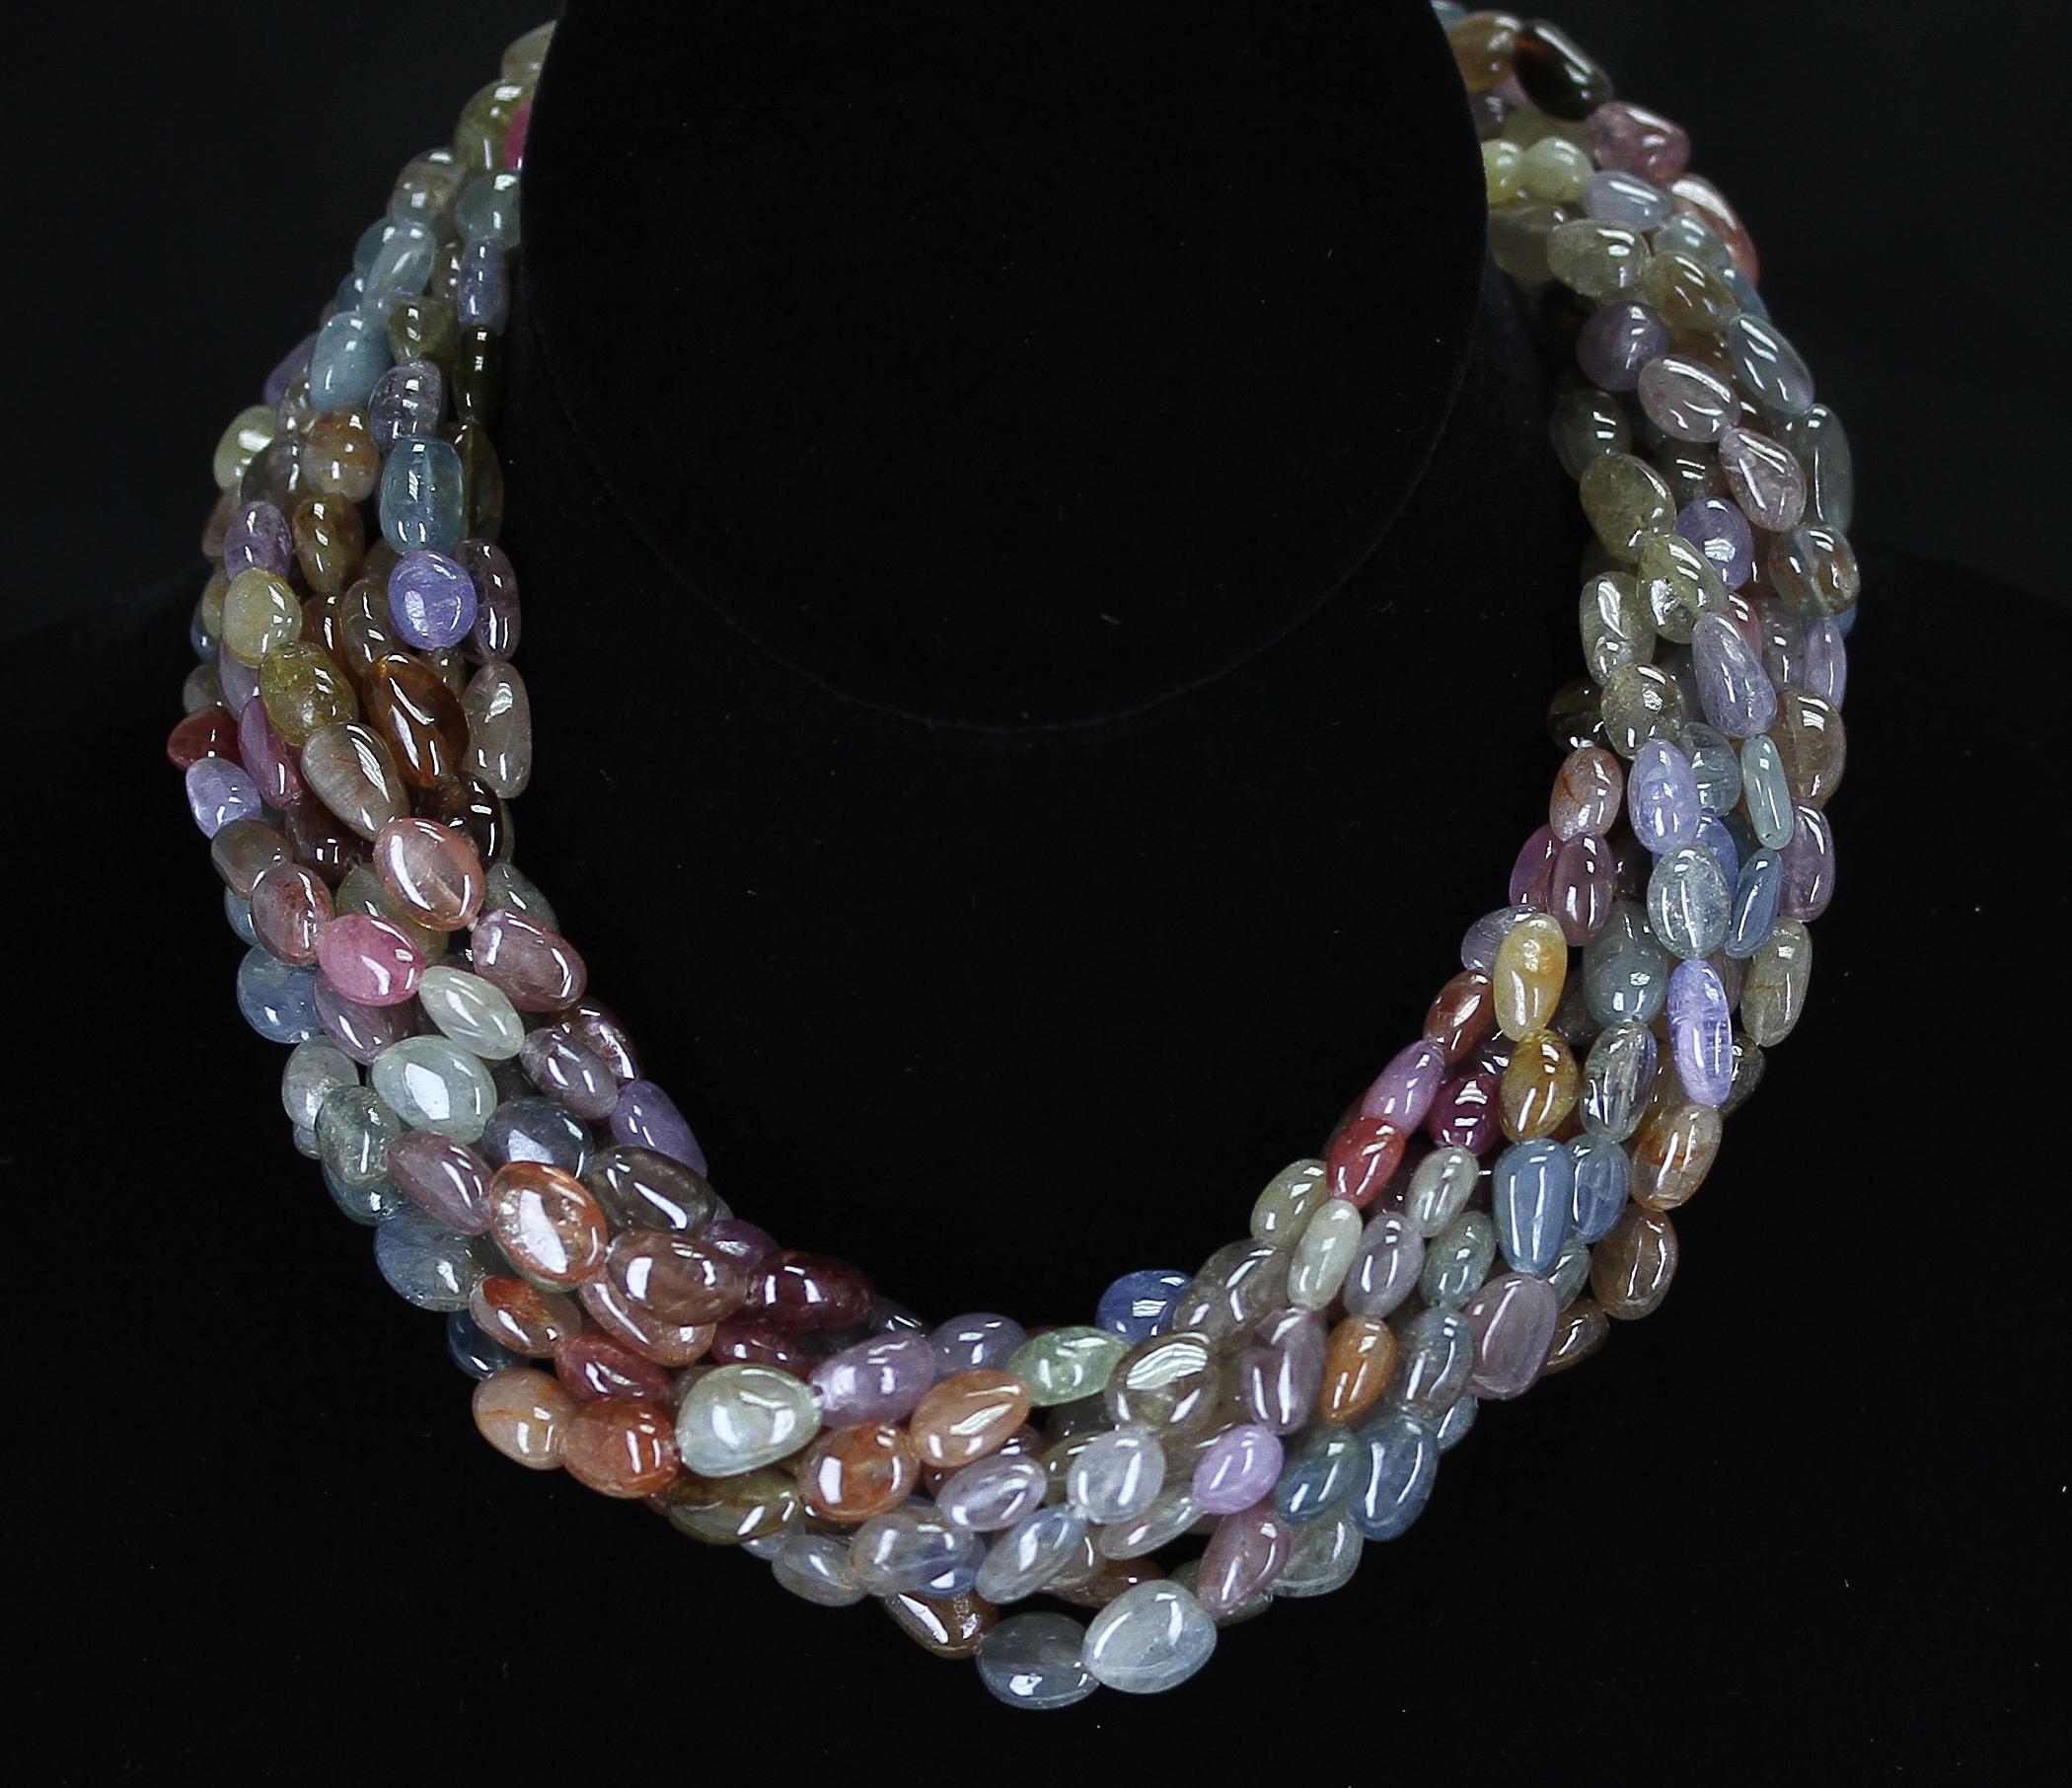 1460 Karat echte & natürliche erdfarbene mehrfarbige gesprenkelte Perlen-Choker-Halskette mit gesprenkelten Perlen für Damen oder Herren im Angebot